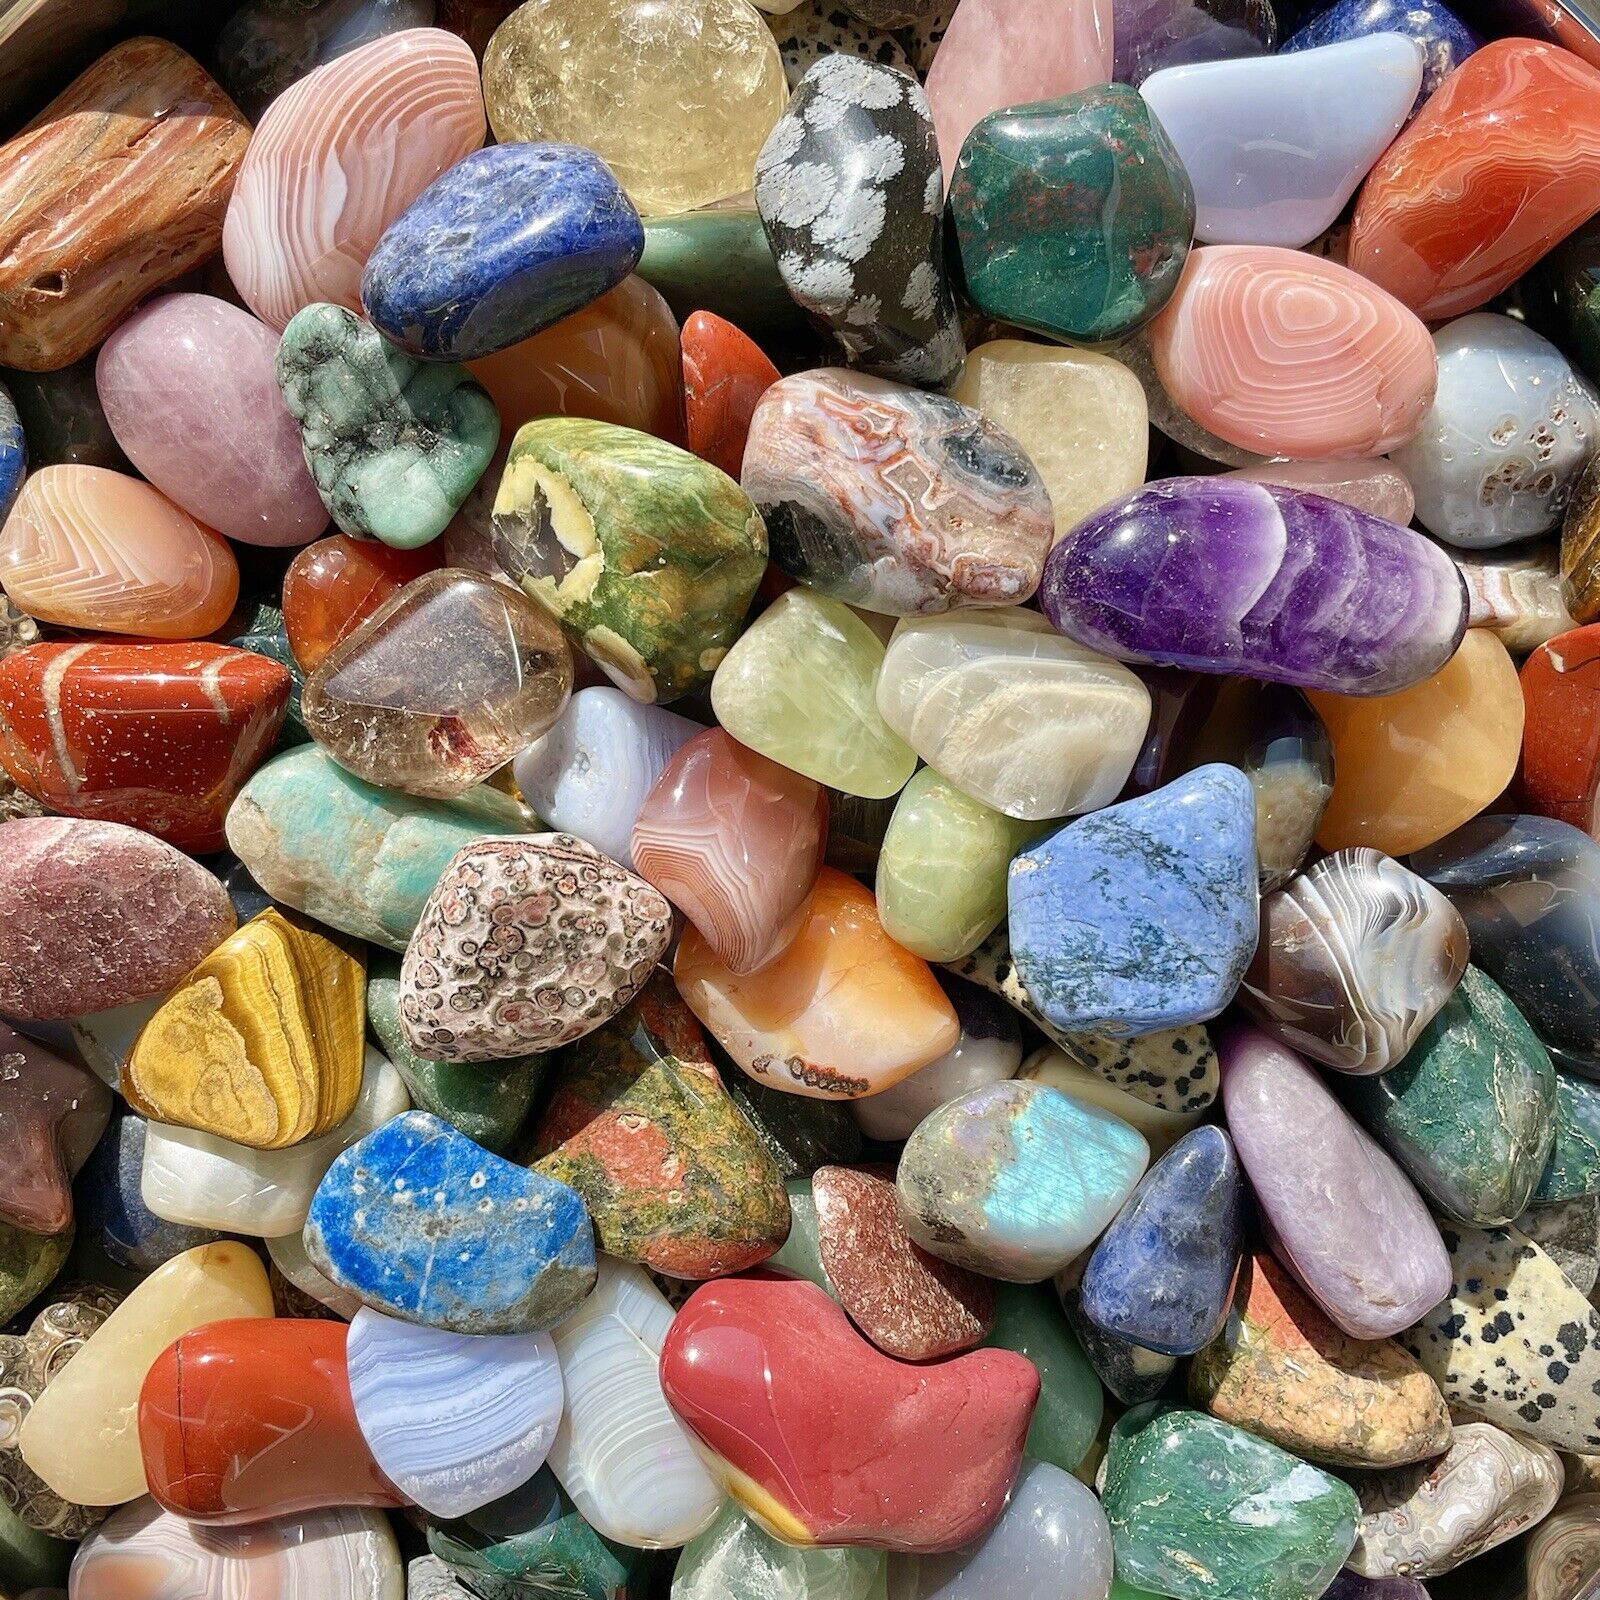 25lb JUMBO Lot Polished Rocks - Tumbled Stones Gemstone Mix - BULK WHOLESALE